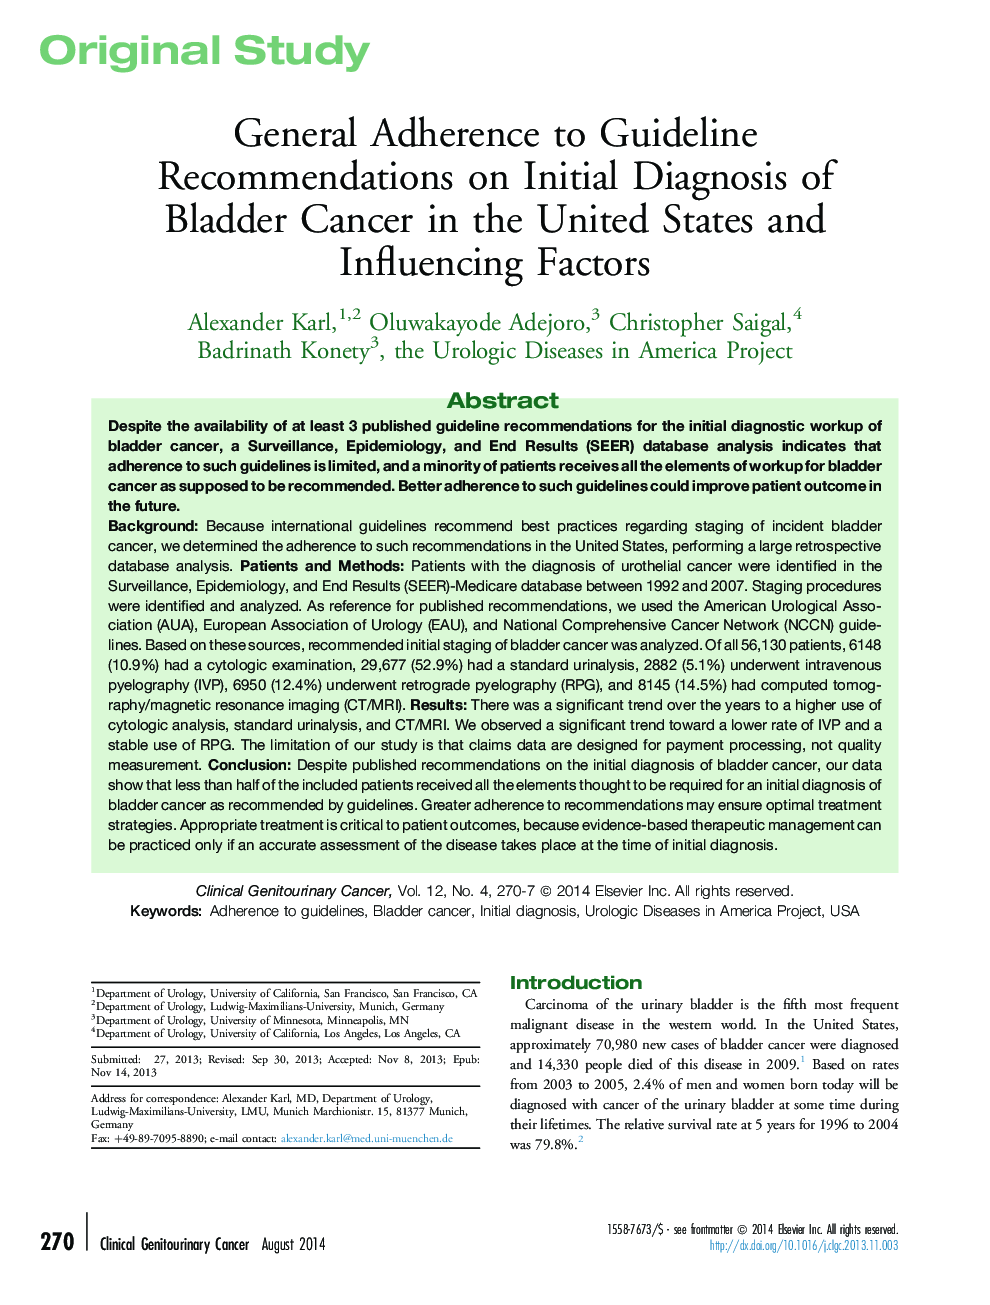 پایبندی عمومی به توصیه های راهنمایی در تشخیص اولیه سرطان مثانه در ایالات متحده و عوامل موثر بر آن 